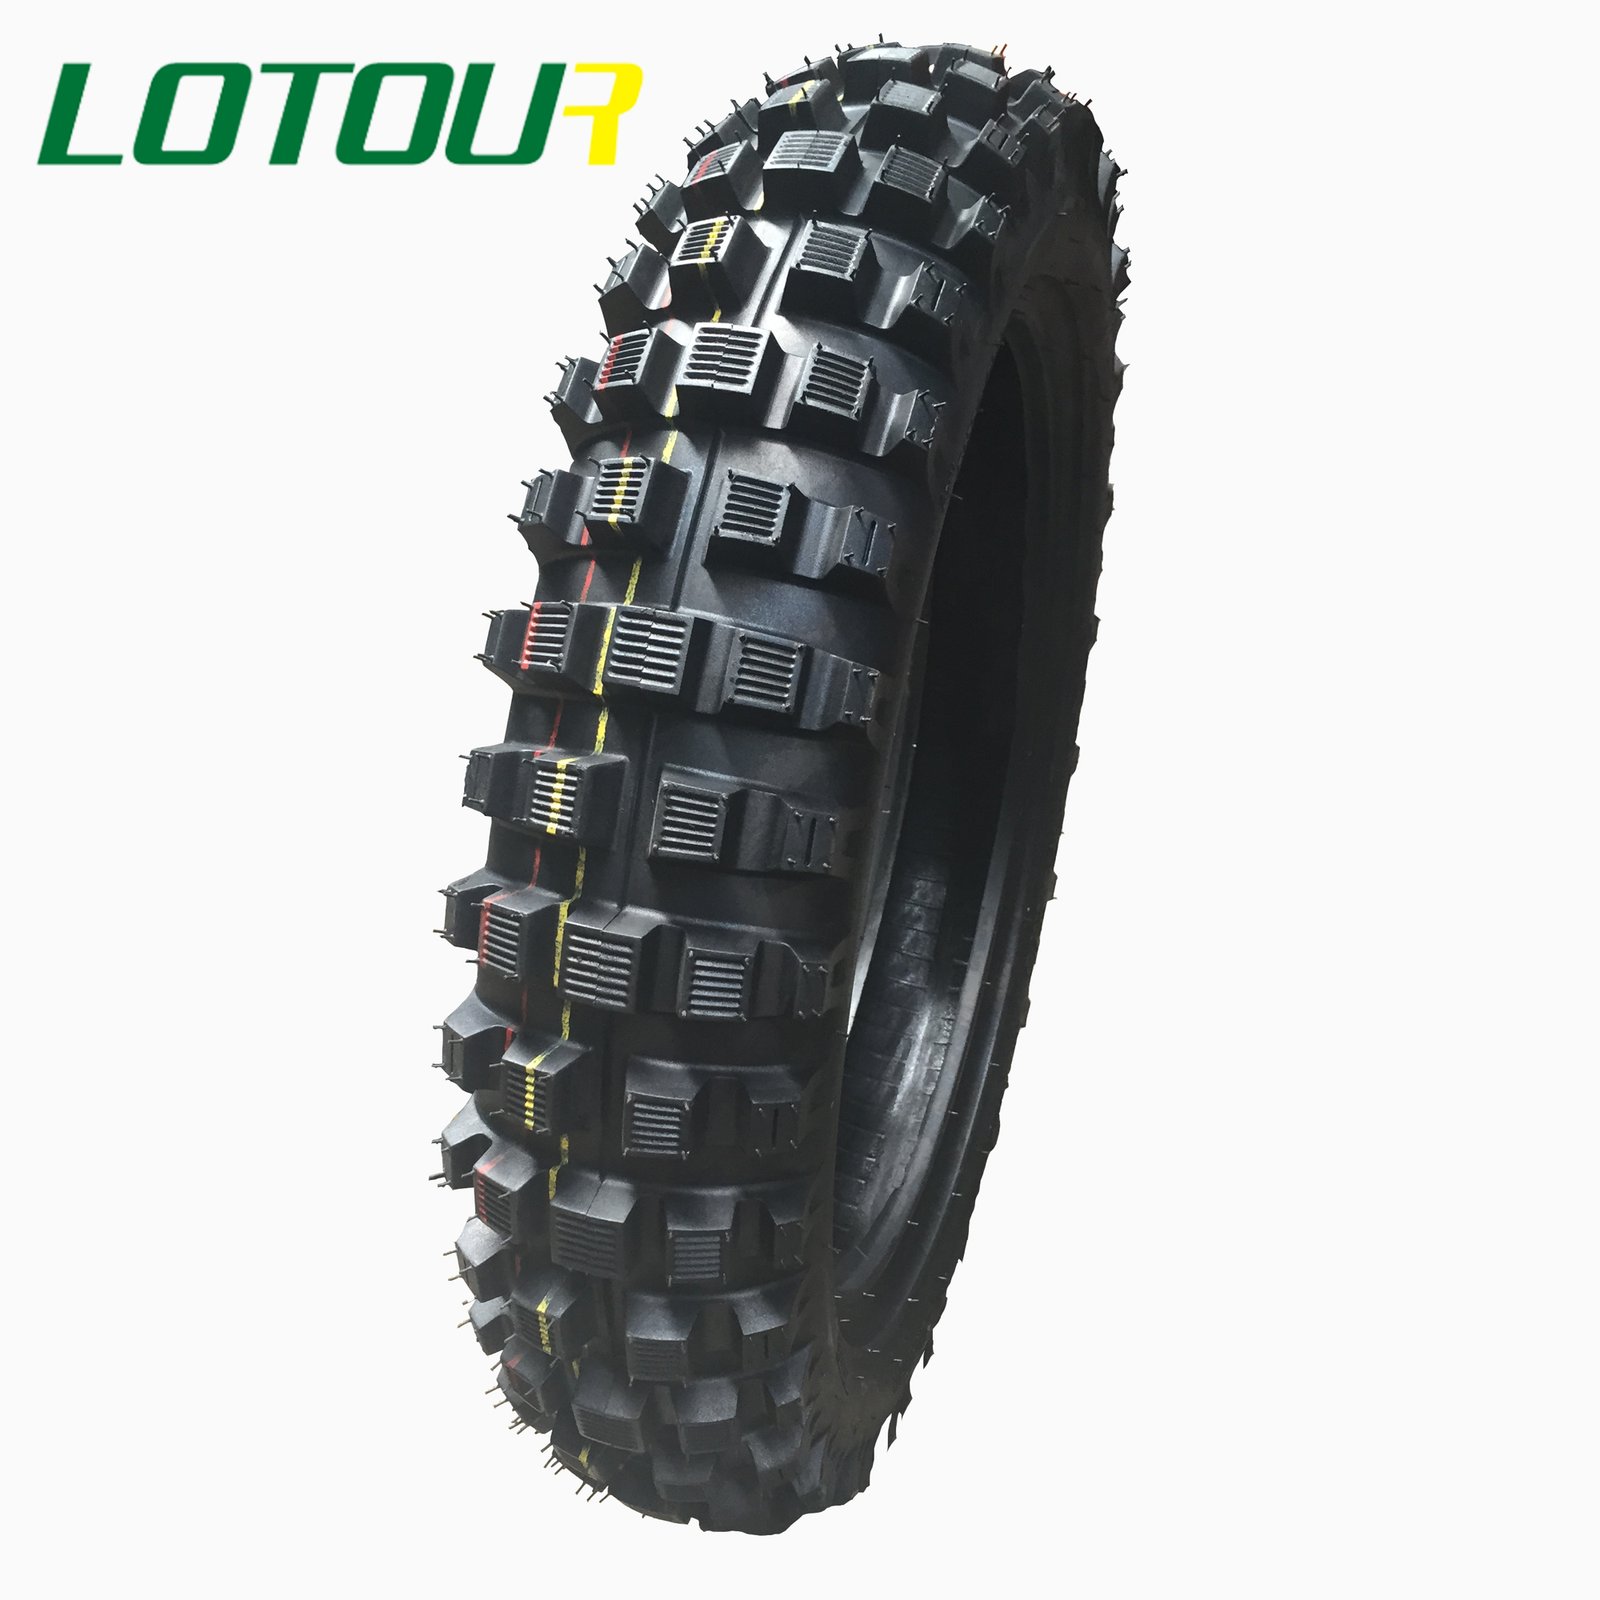 Lotour Tire M3200